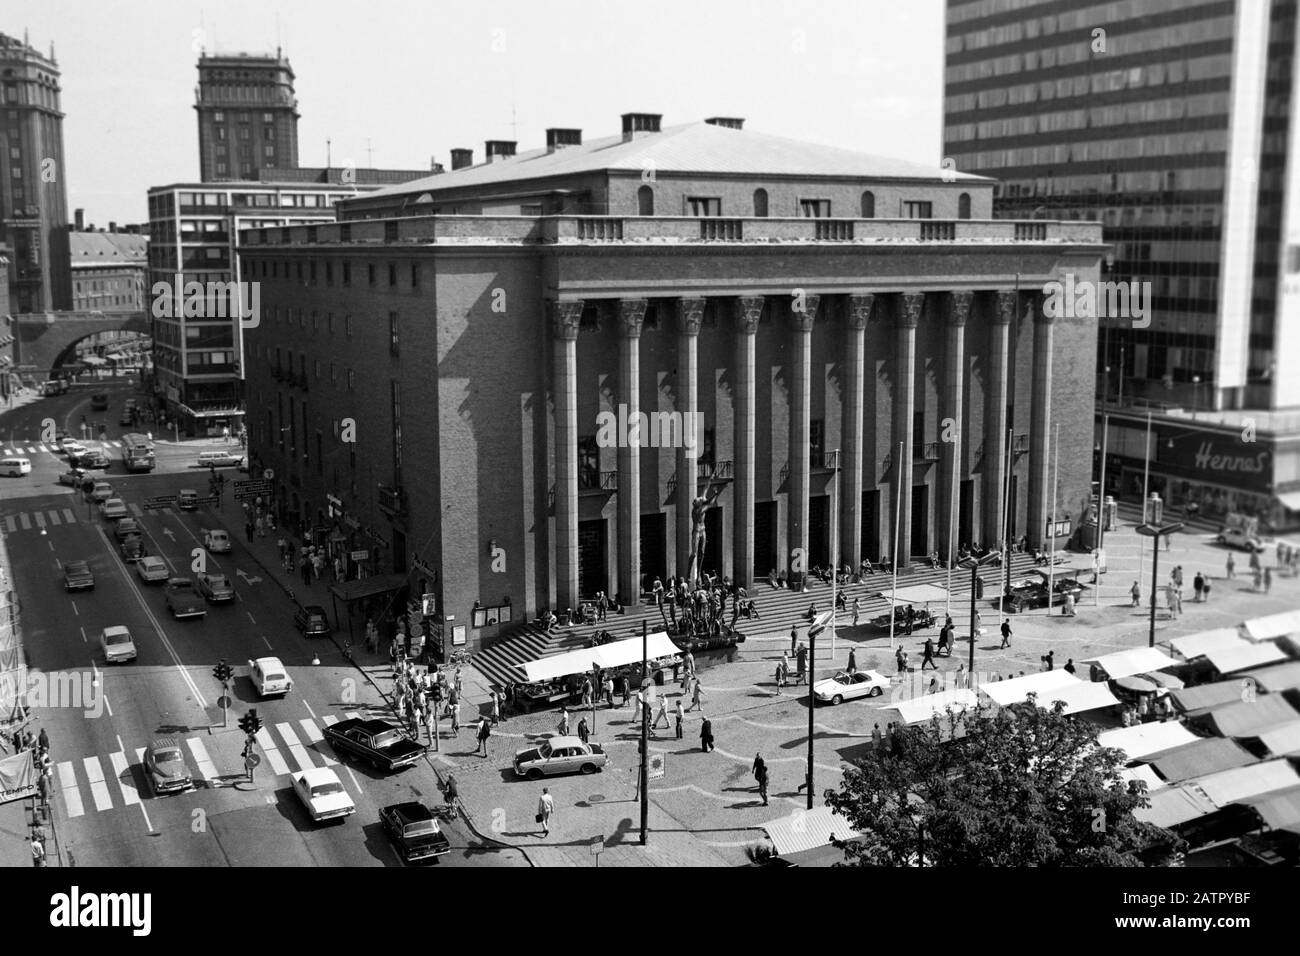 Das Stockholmer Konzerthaus Konserthuset am Hötorget Platz in Stockholm, Schweden, 1969. The Stockholm concert hall Konserthuset on Hötorget square in Stockholm, Sweden, 1969. Stock Photo